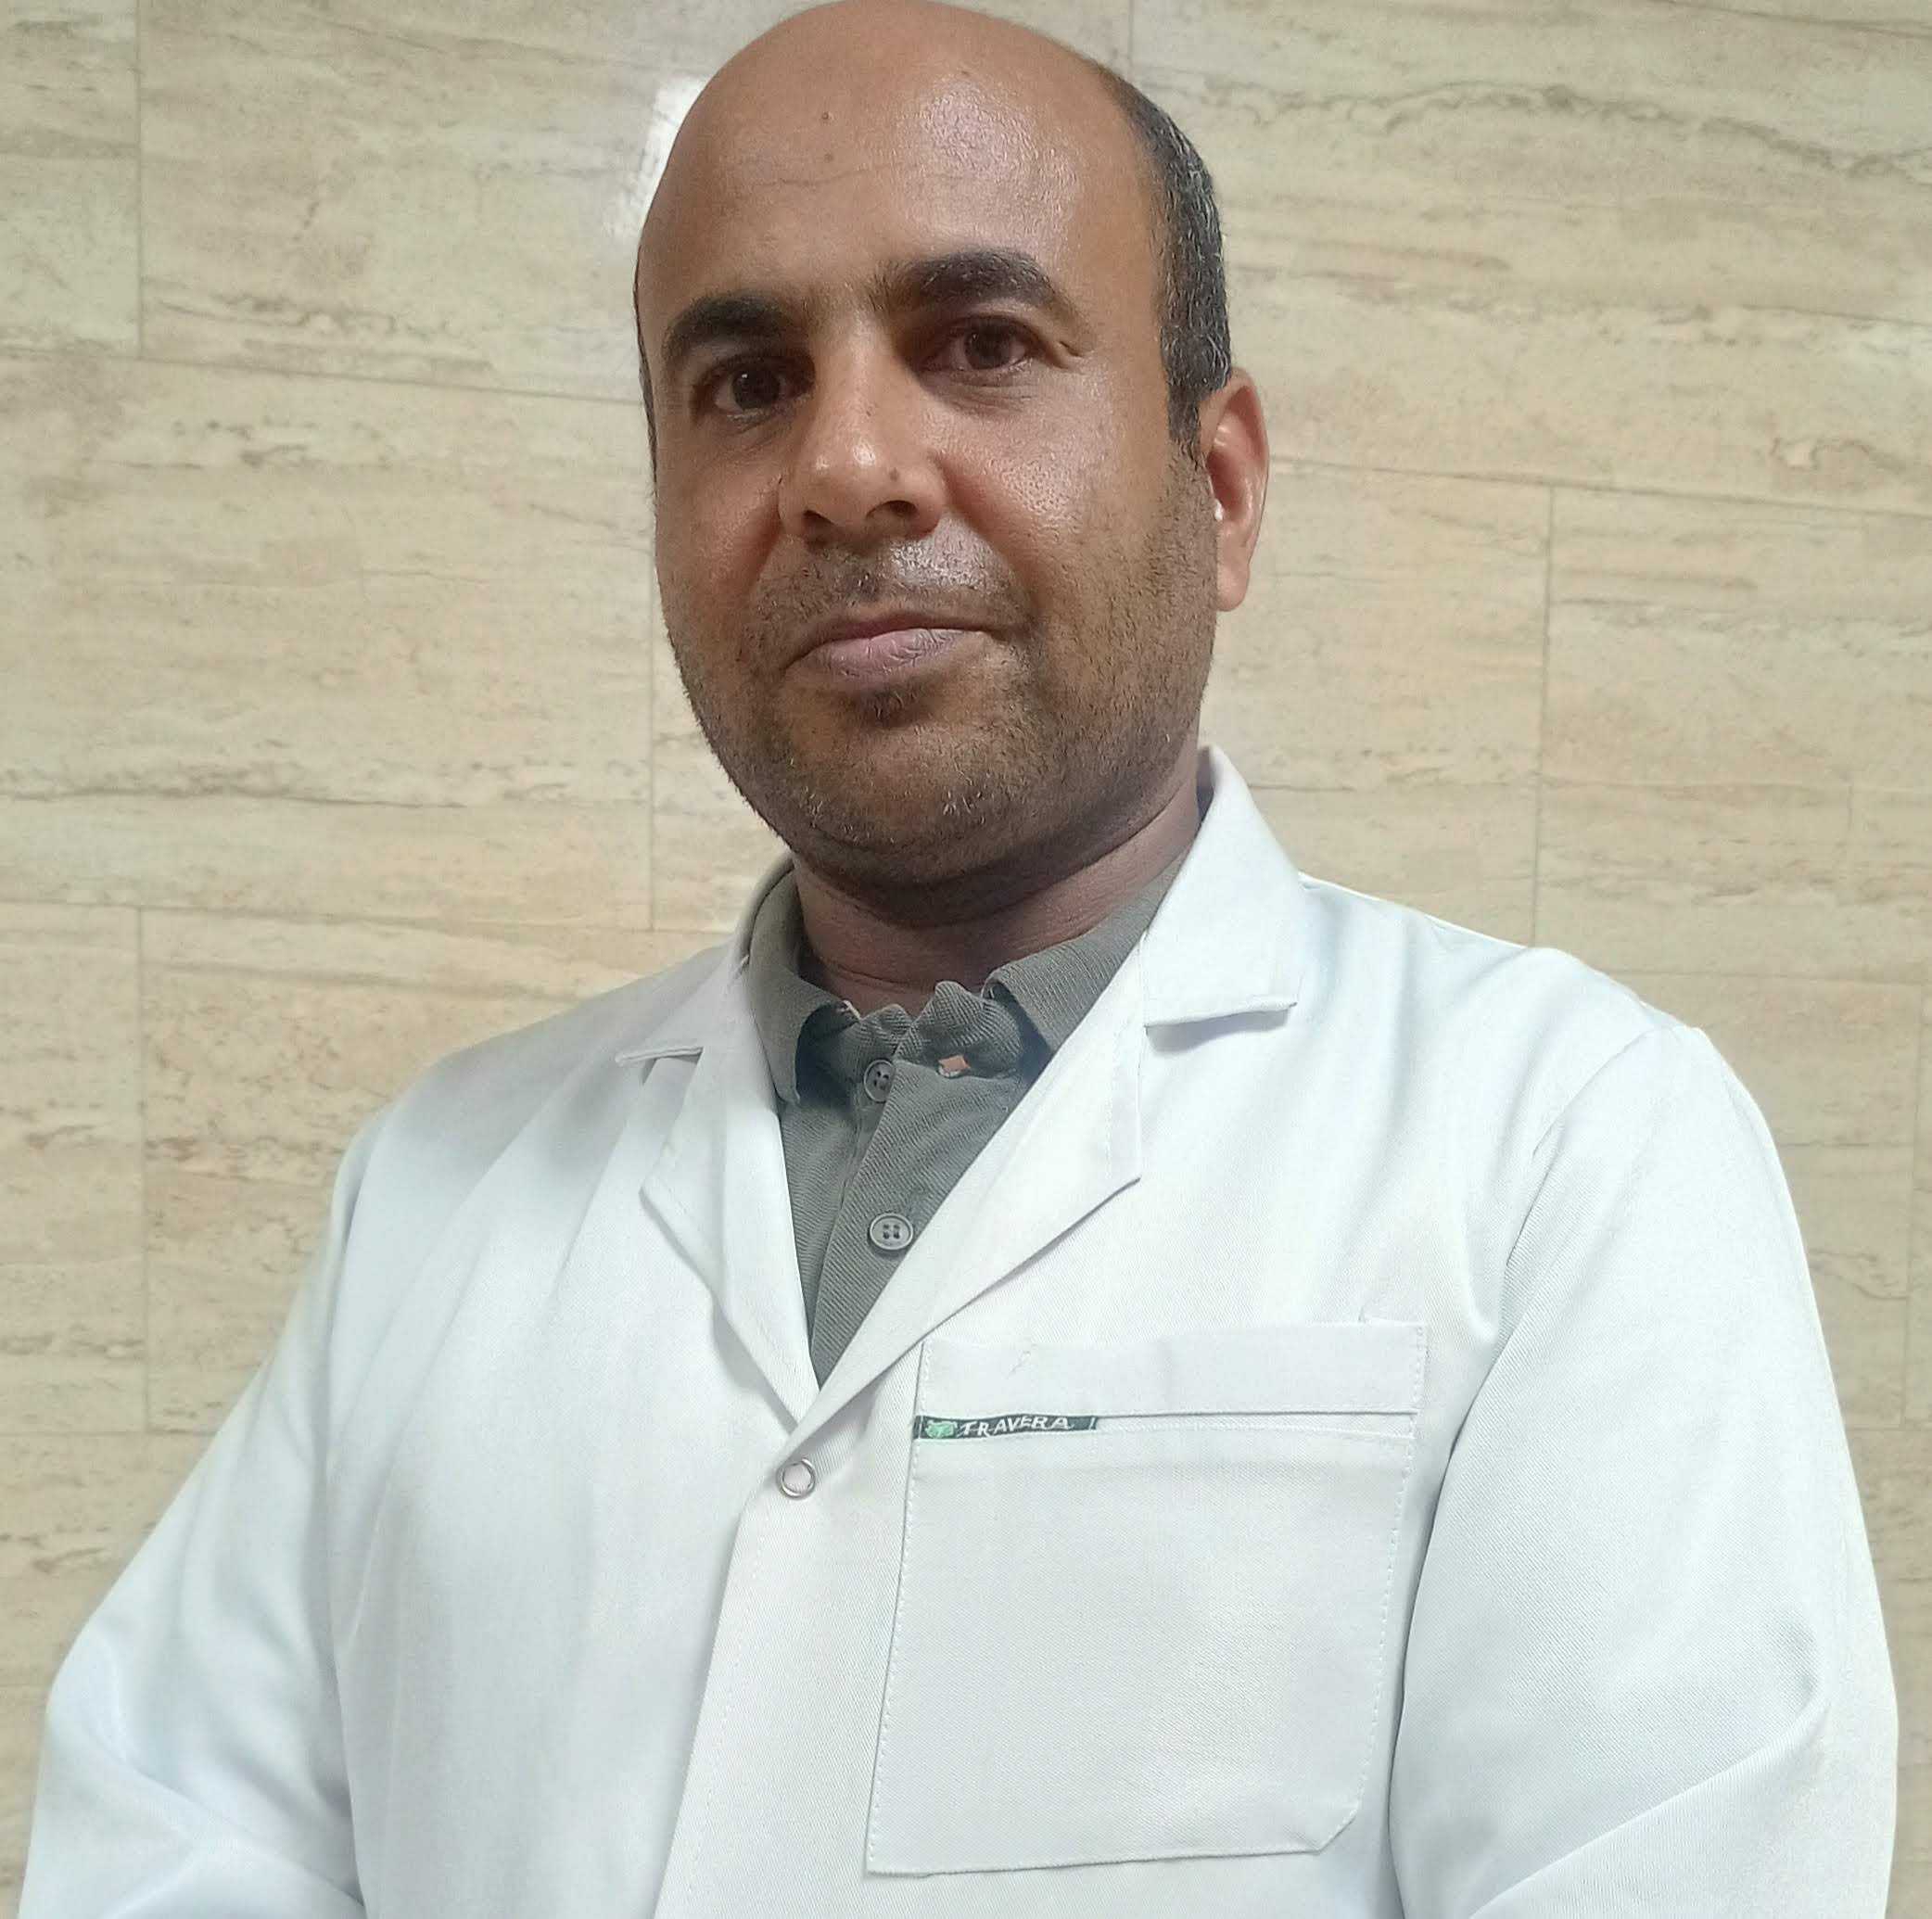 Dr. mohamed Abdelhak ahmed osman